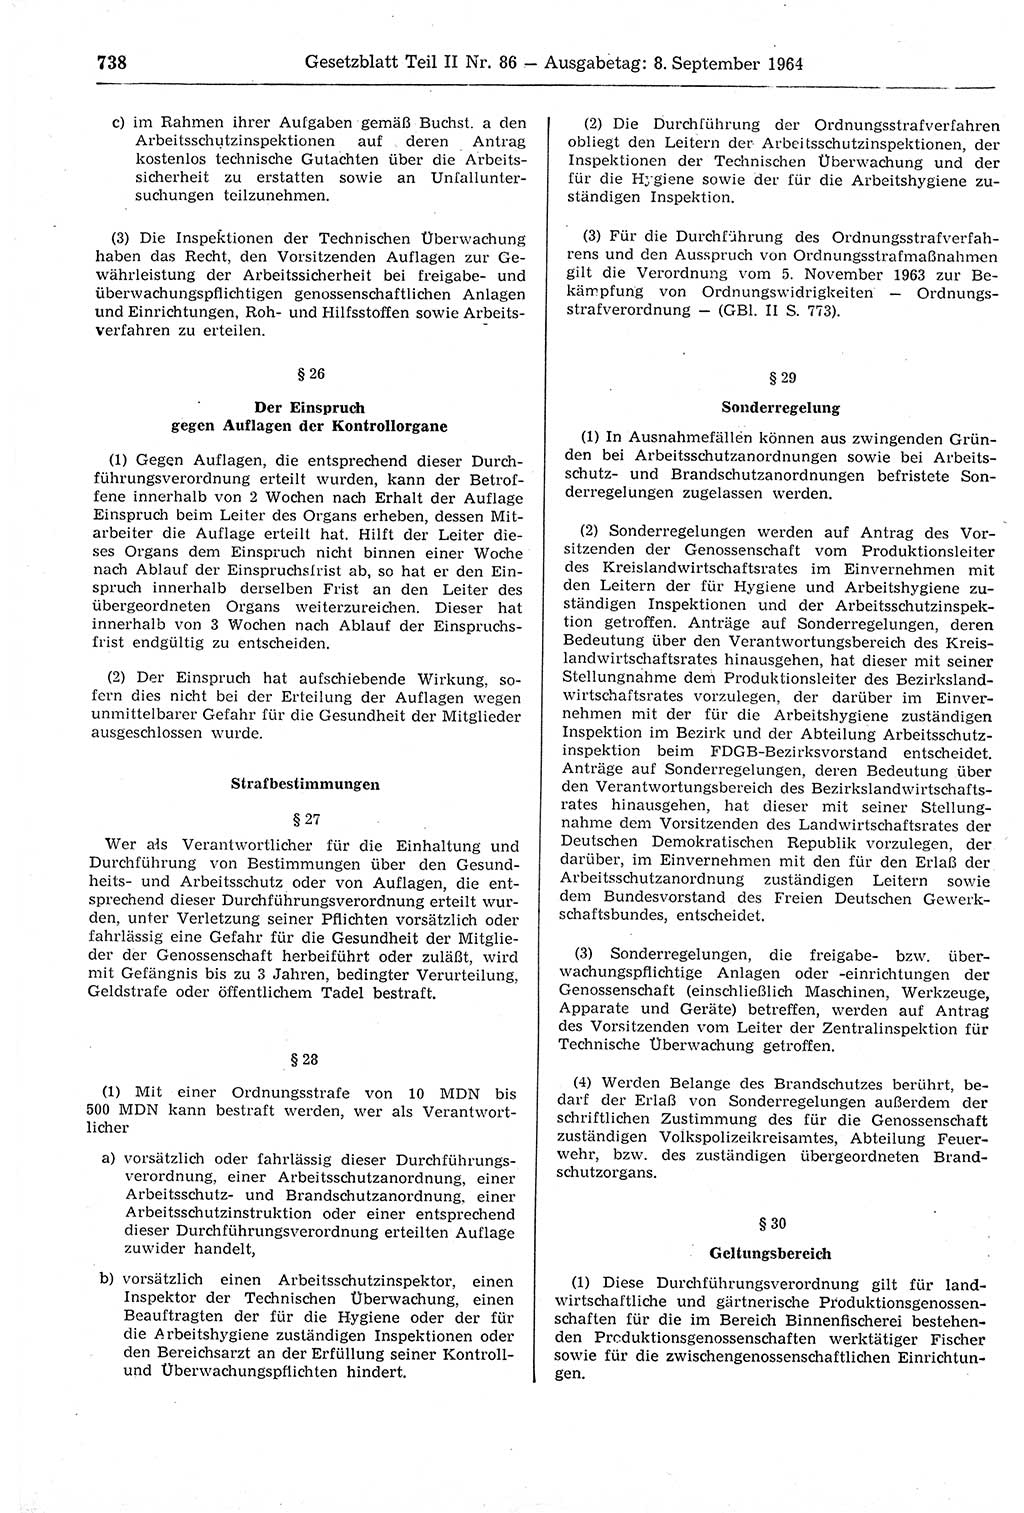 Gesetzblatt (GBl.) der Deutschen Demokratischen Republik (DDR) Teil ⅠⅠ 1964, Seite 738 (GBl. DDR ⅠⅠ 1964, S. 738)